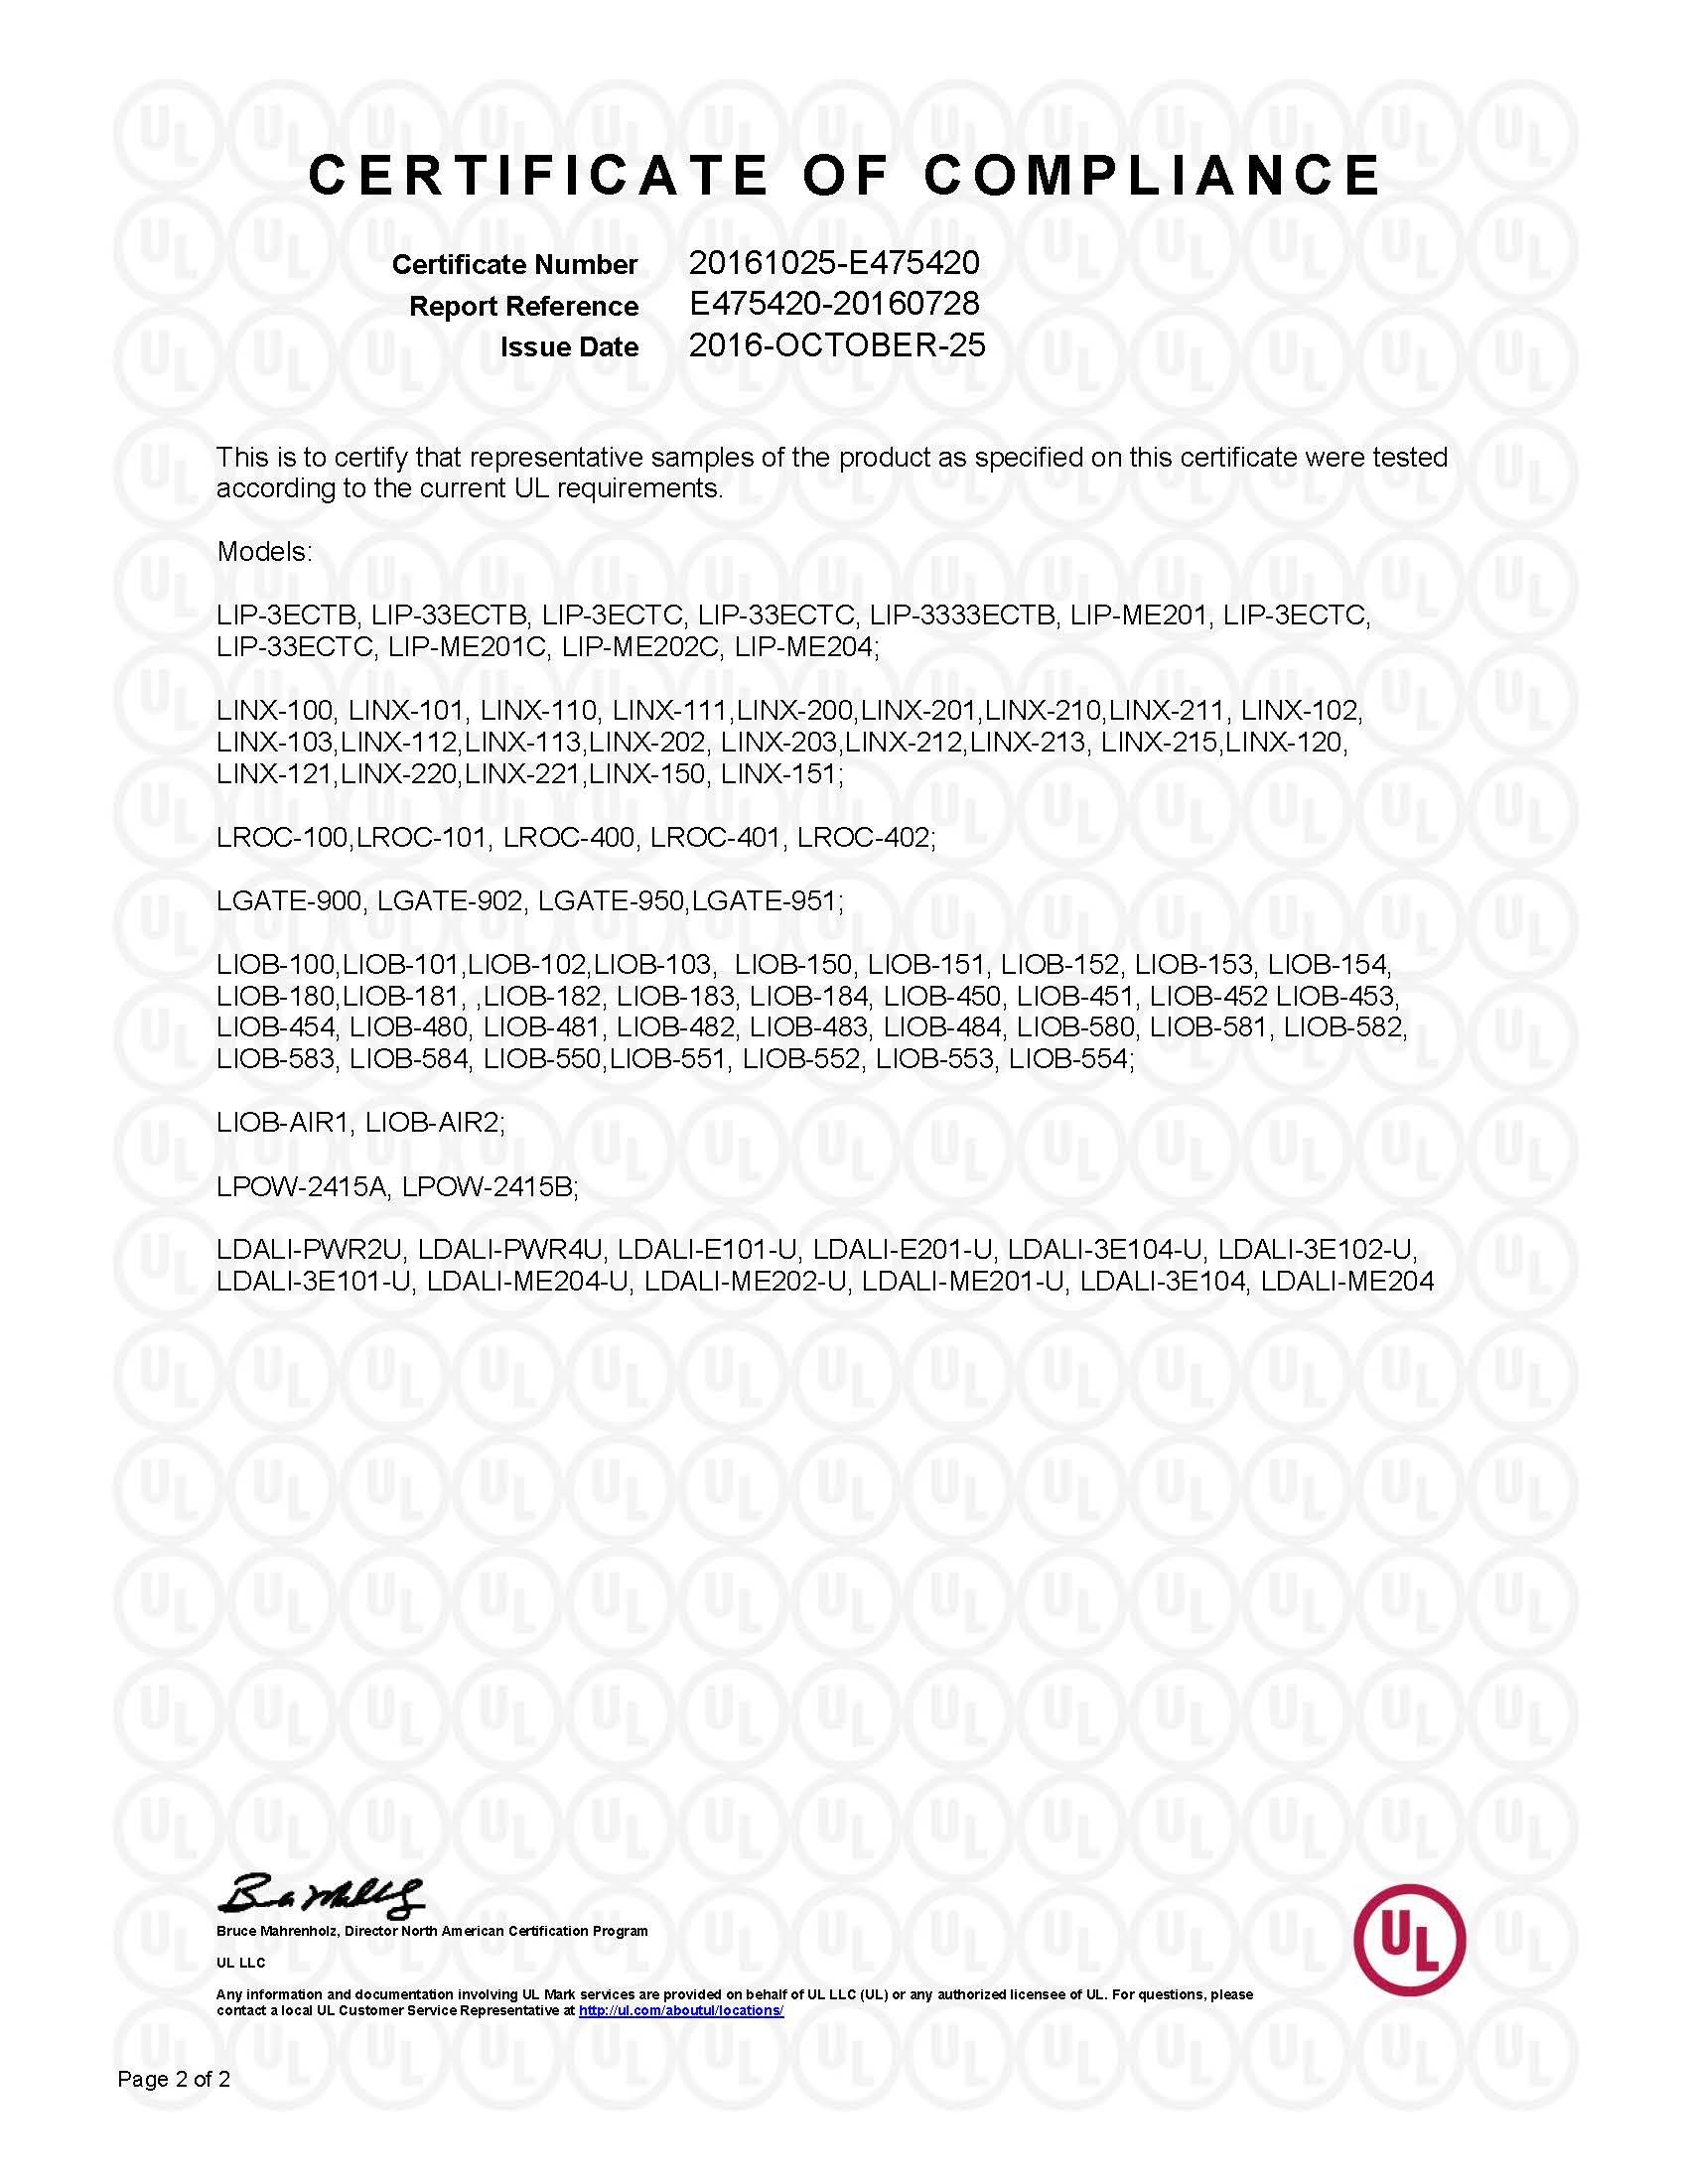 UL_Certificate_of_Complicance PDF